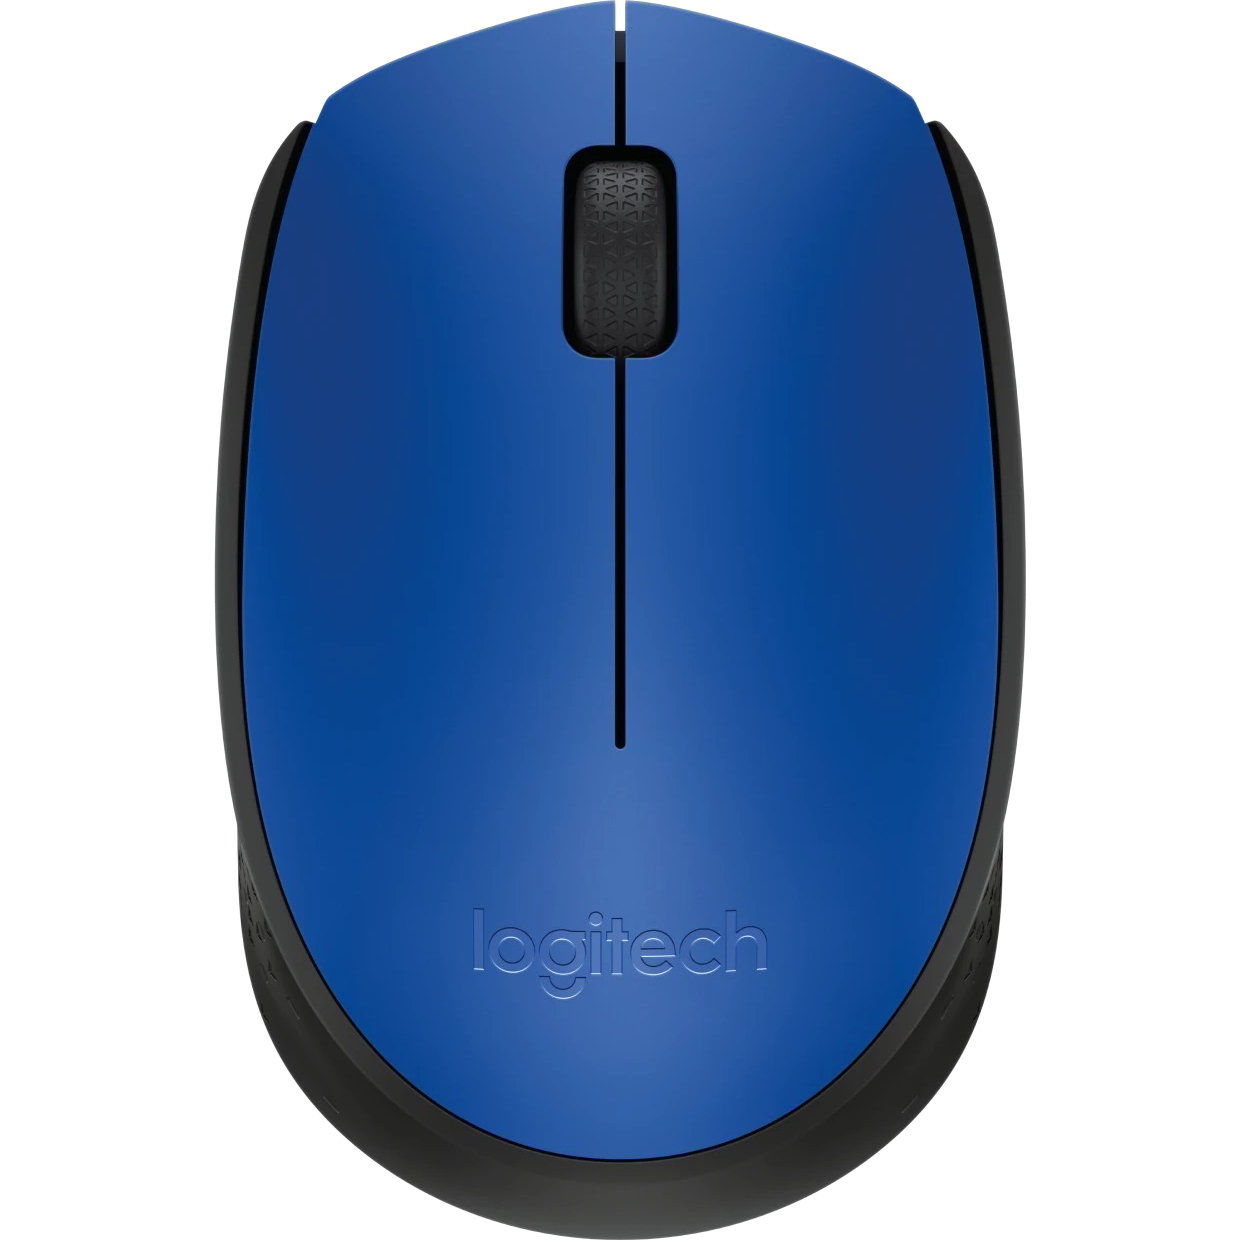 Компьютерная мышь Logitech M170 синий мышь беспроводная logitech m170 black